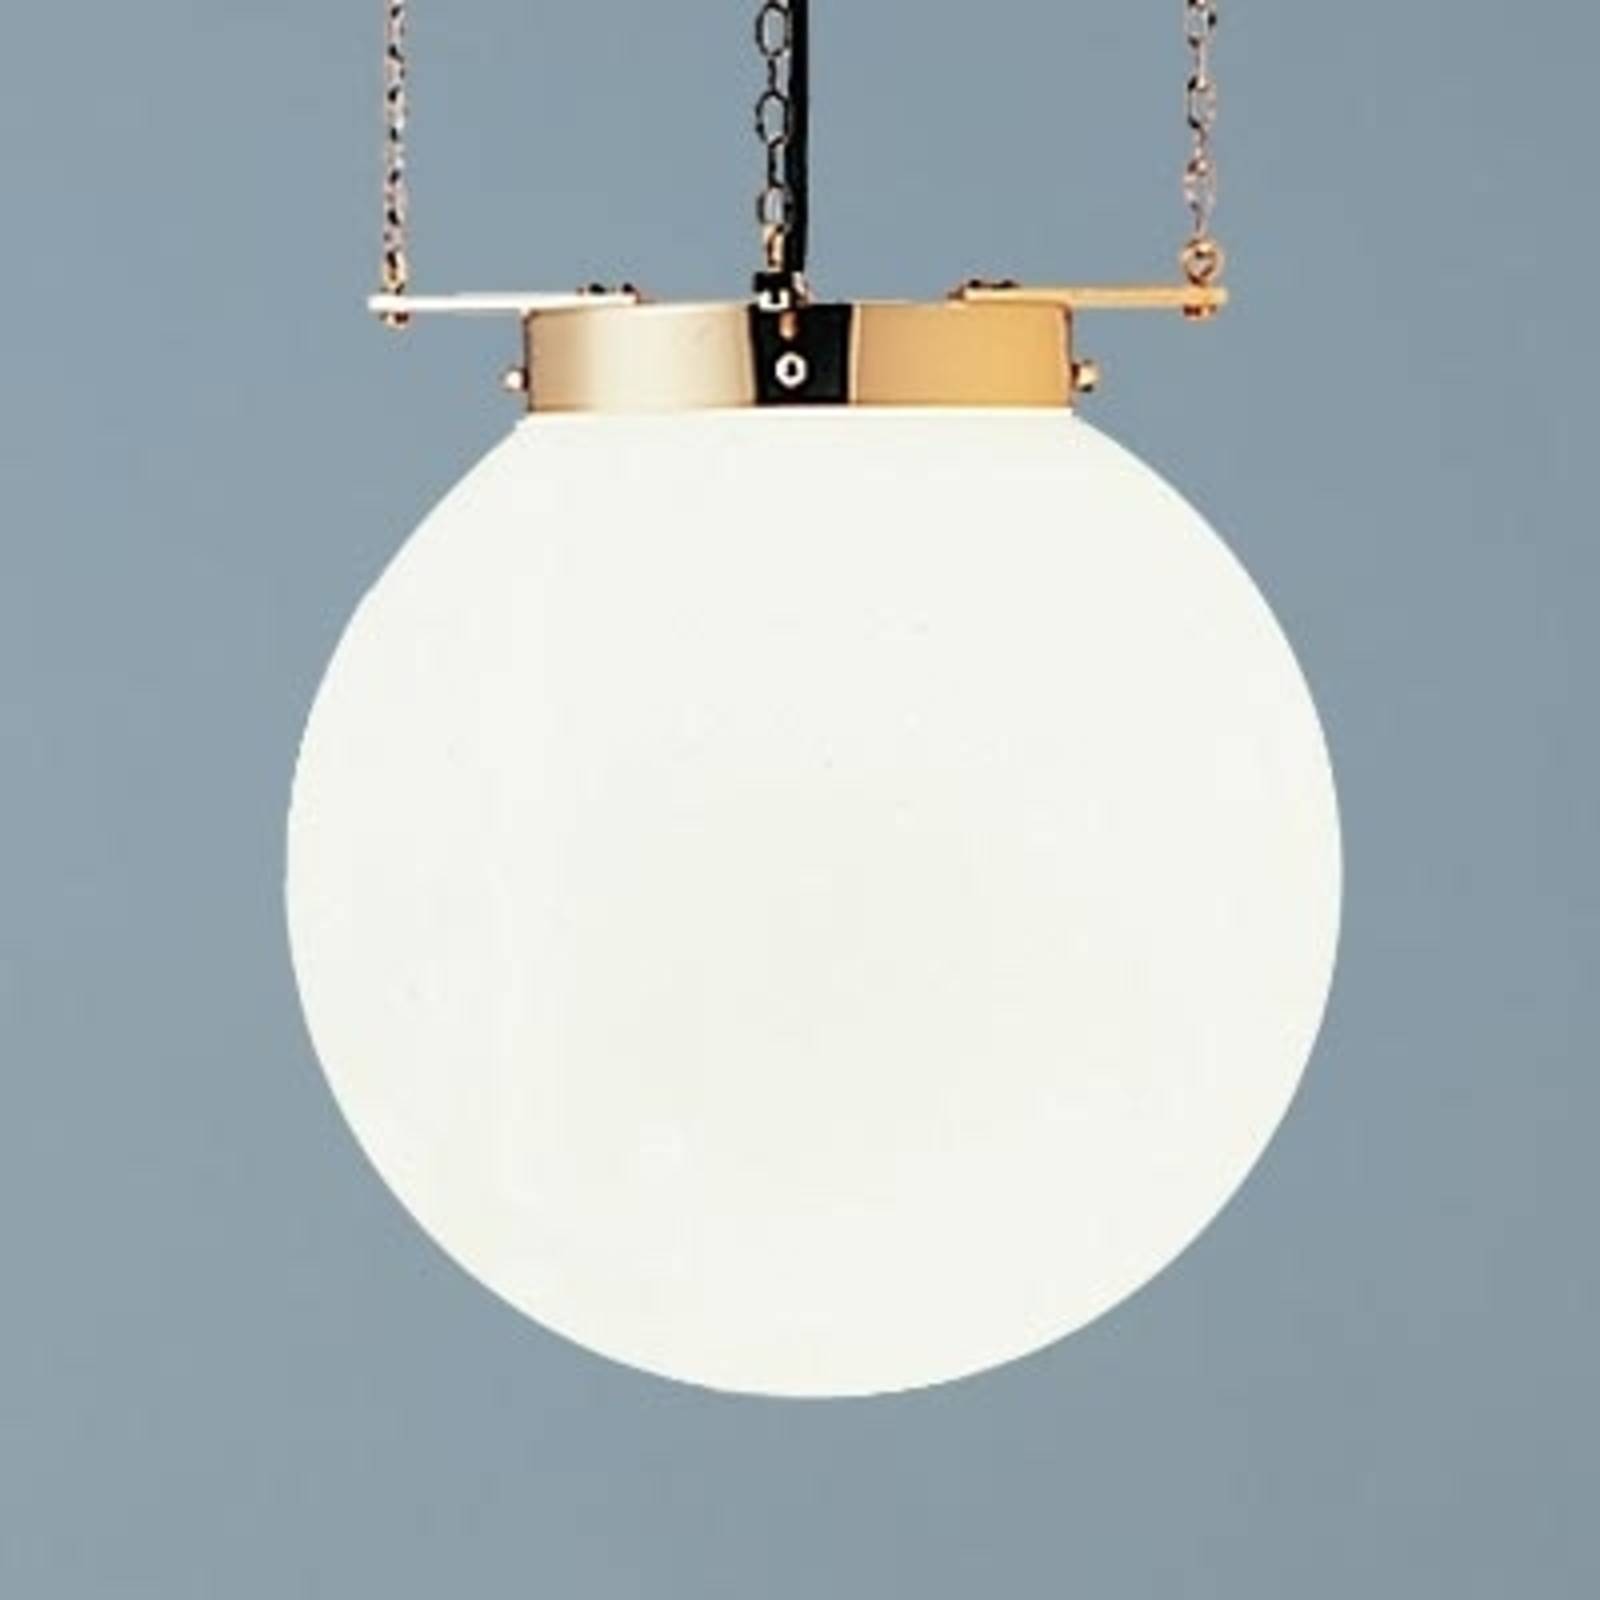 Hesje historisch orgaan Hanglamp in Bauhaus-stijl, nikkel | Lampen24.be